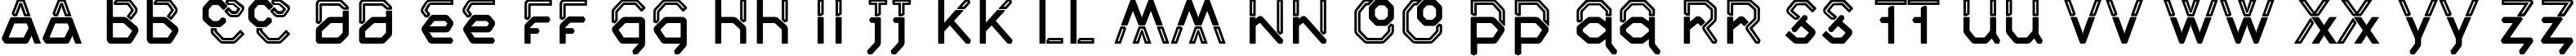 Пример написания английского алфавита шрифтом Inline